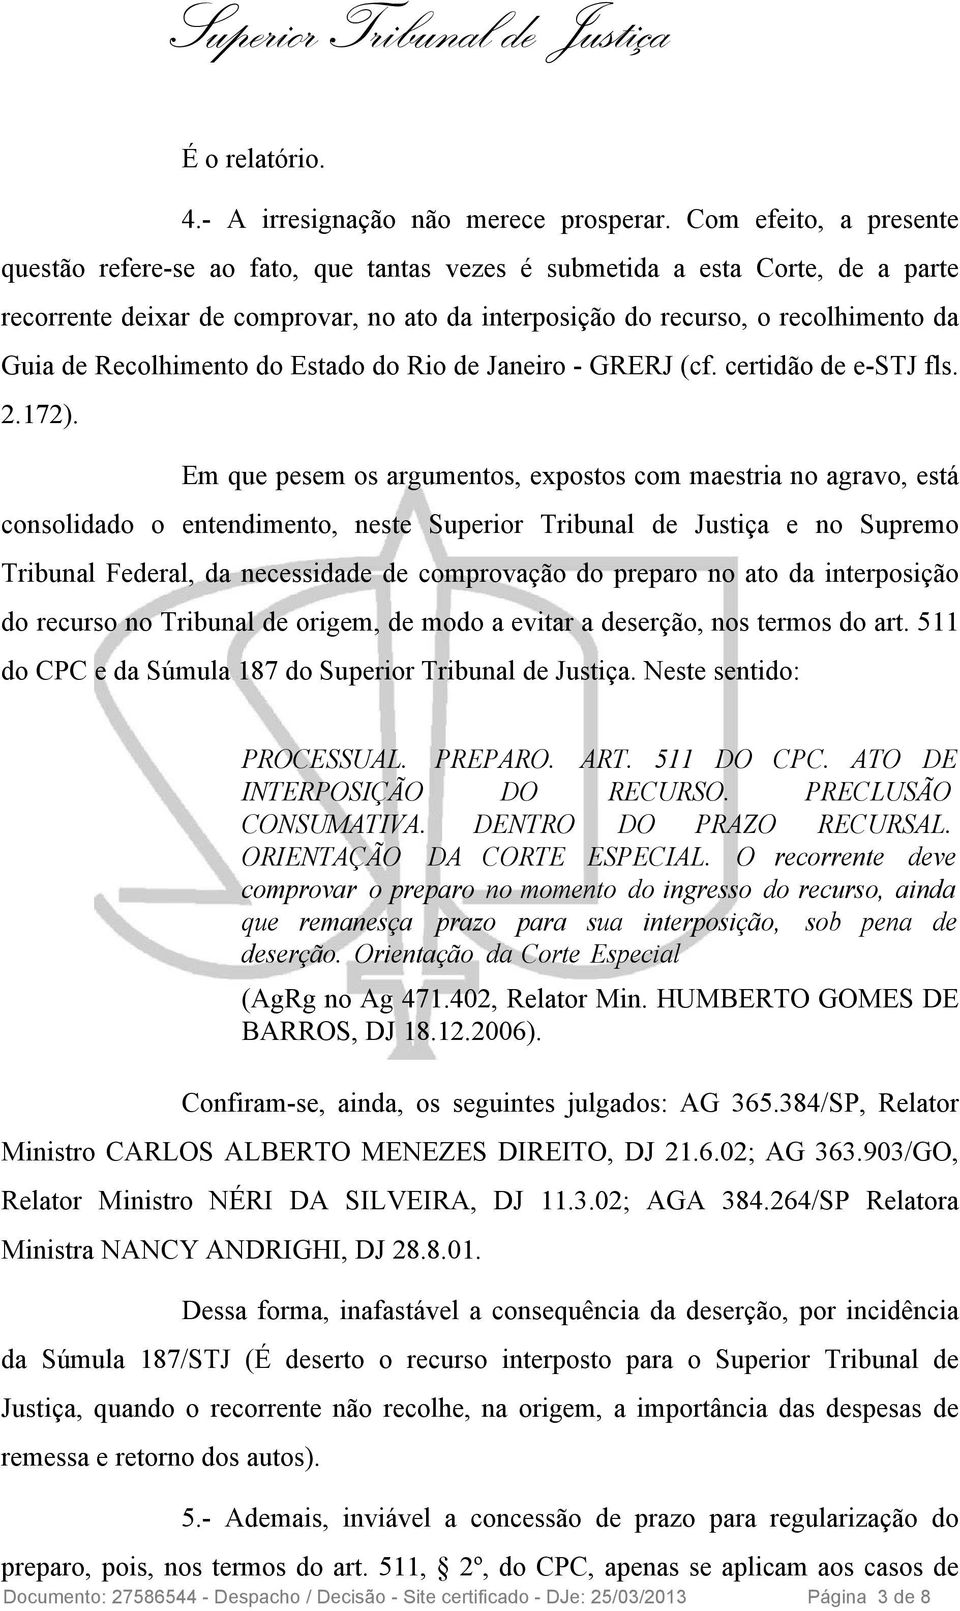 Recolhimento do Estado do Rio de Janeiro - GRERJ (cf. certidão de e-stj fls. 2.172).